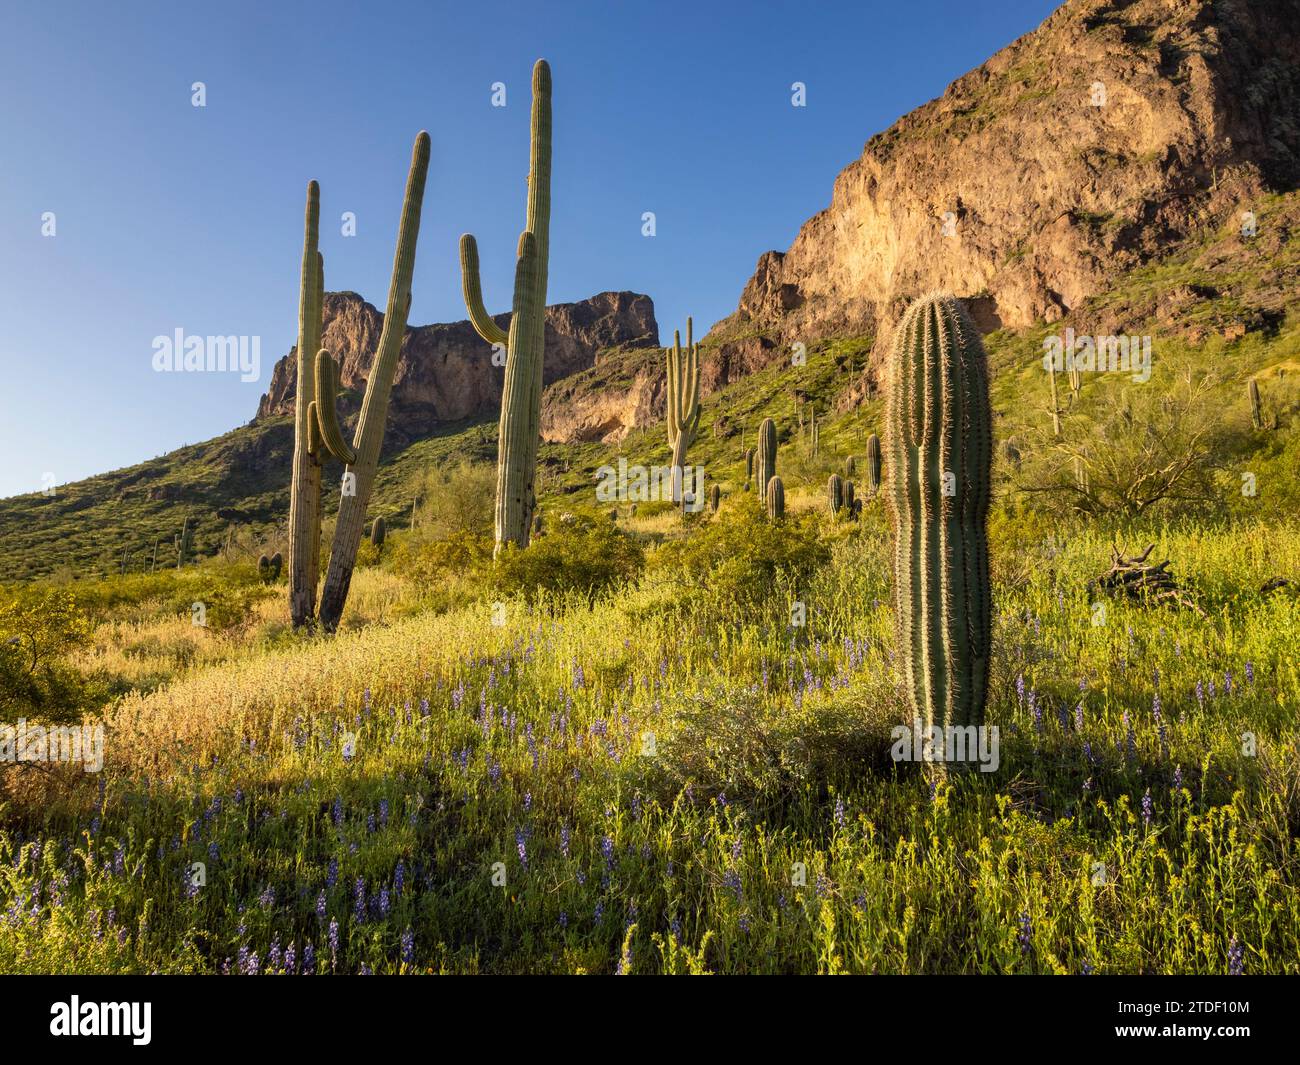 Le cactus Saguaro (Carnegiea gigantea) parsèment les terres entourant Picacho Peak, dans le parc d'État de Picacho Peak, Arizona, États-Unis d'Amérique, Amérique du Nord Banque D'Images